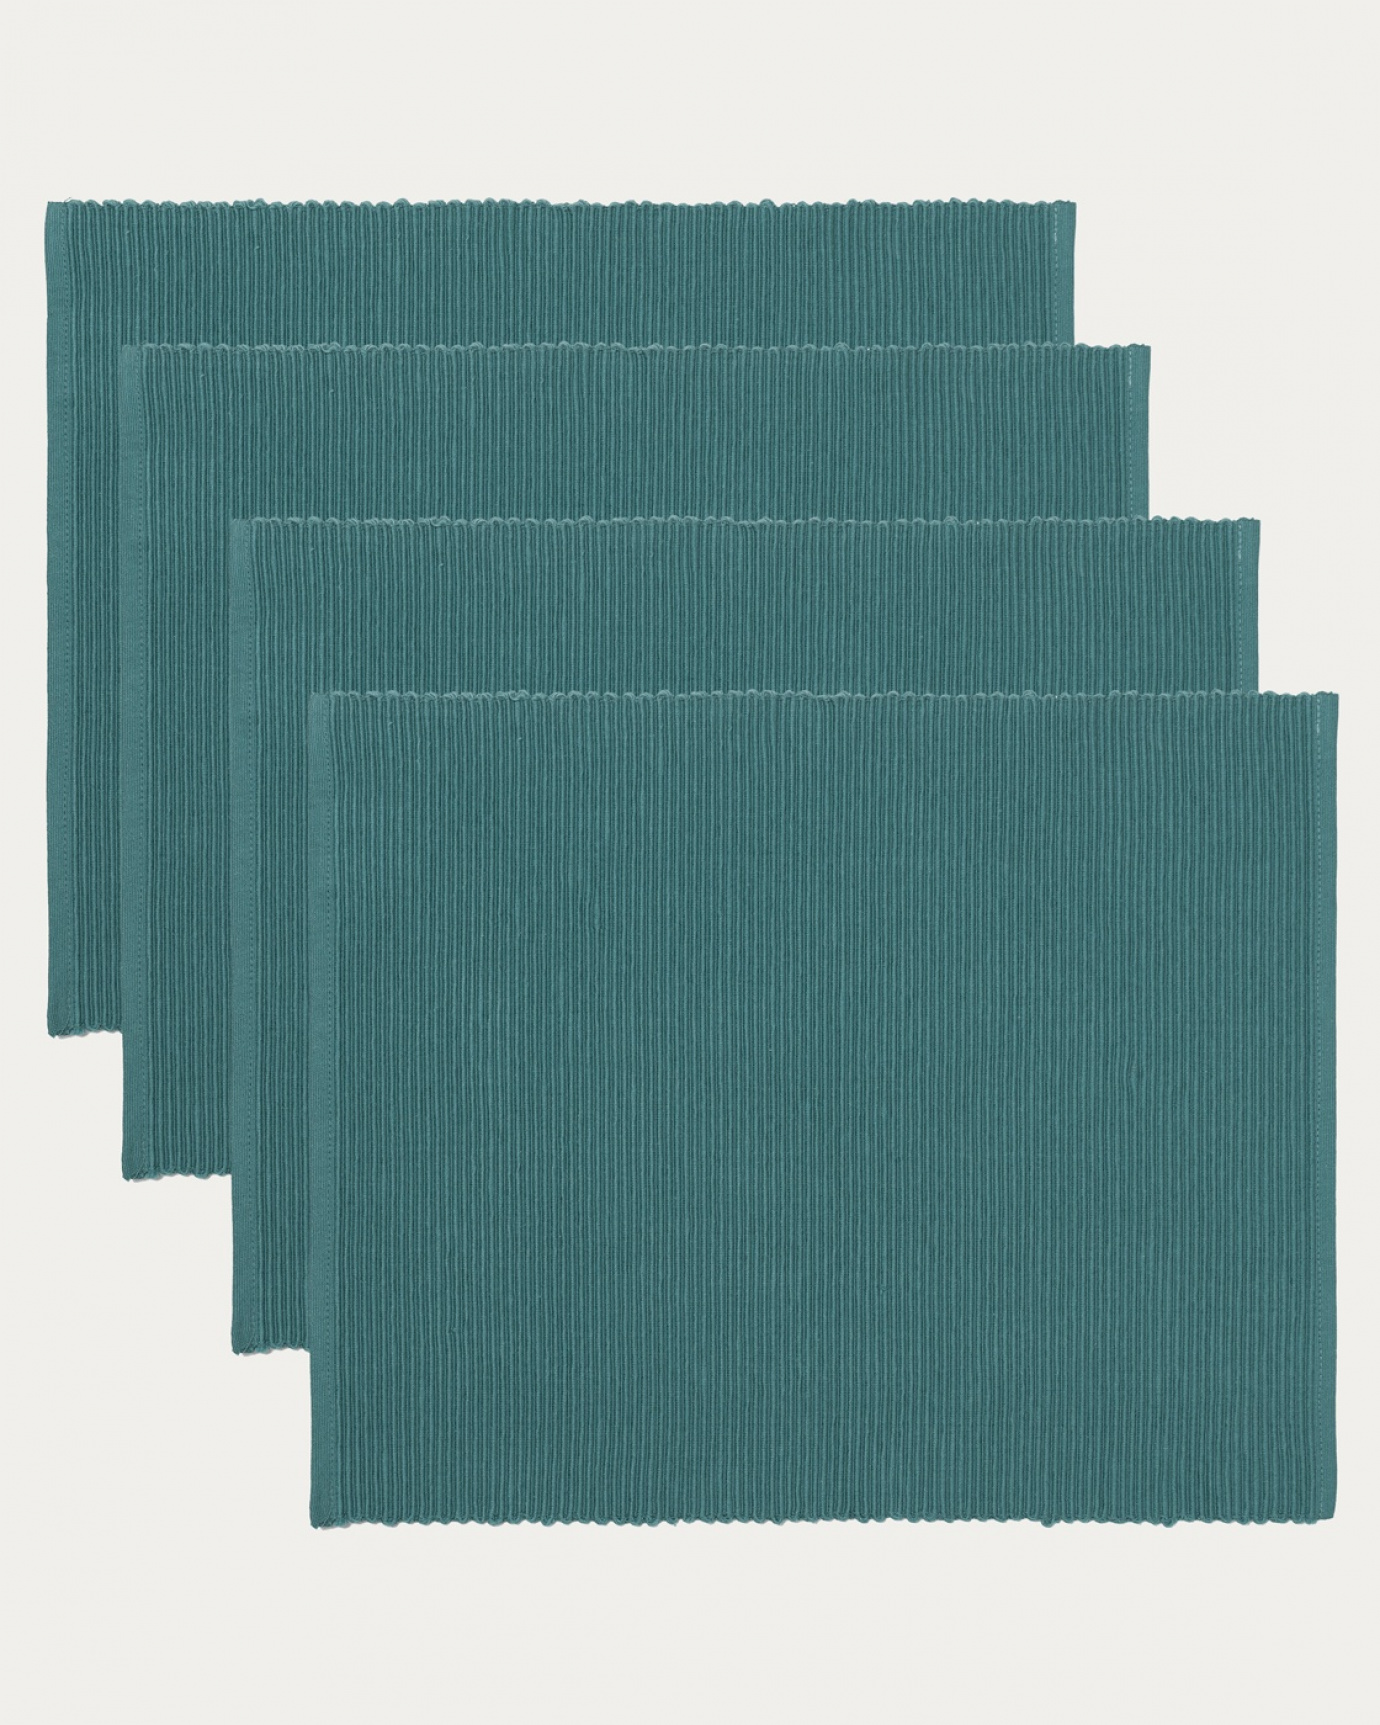 Image du produit set de table UNI gris foncé turquoise en coton doux de qualité côtelée de LINUM DESIGN. Taille 35 x 46 cm et vendu en lot de 4.